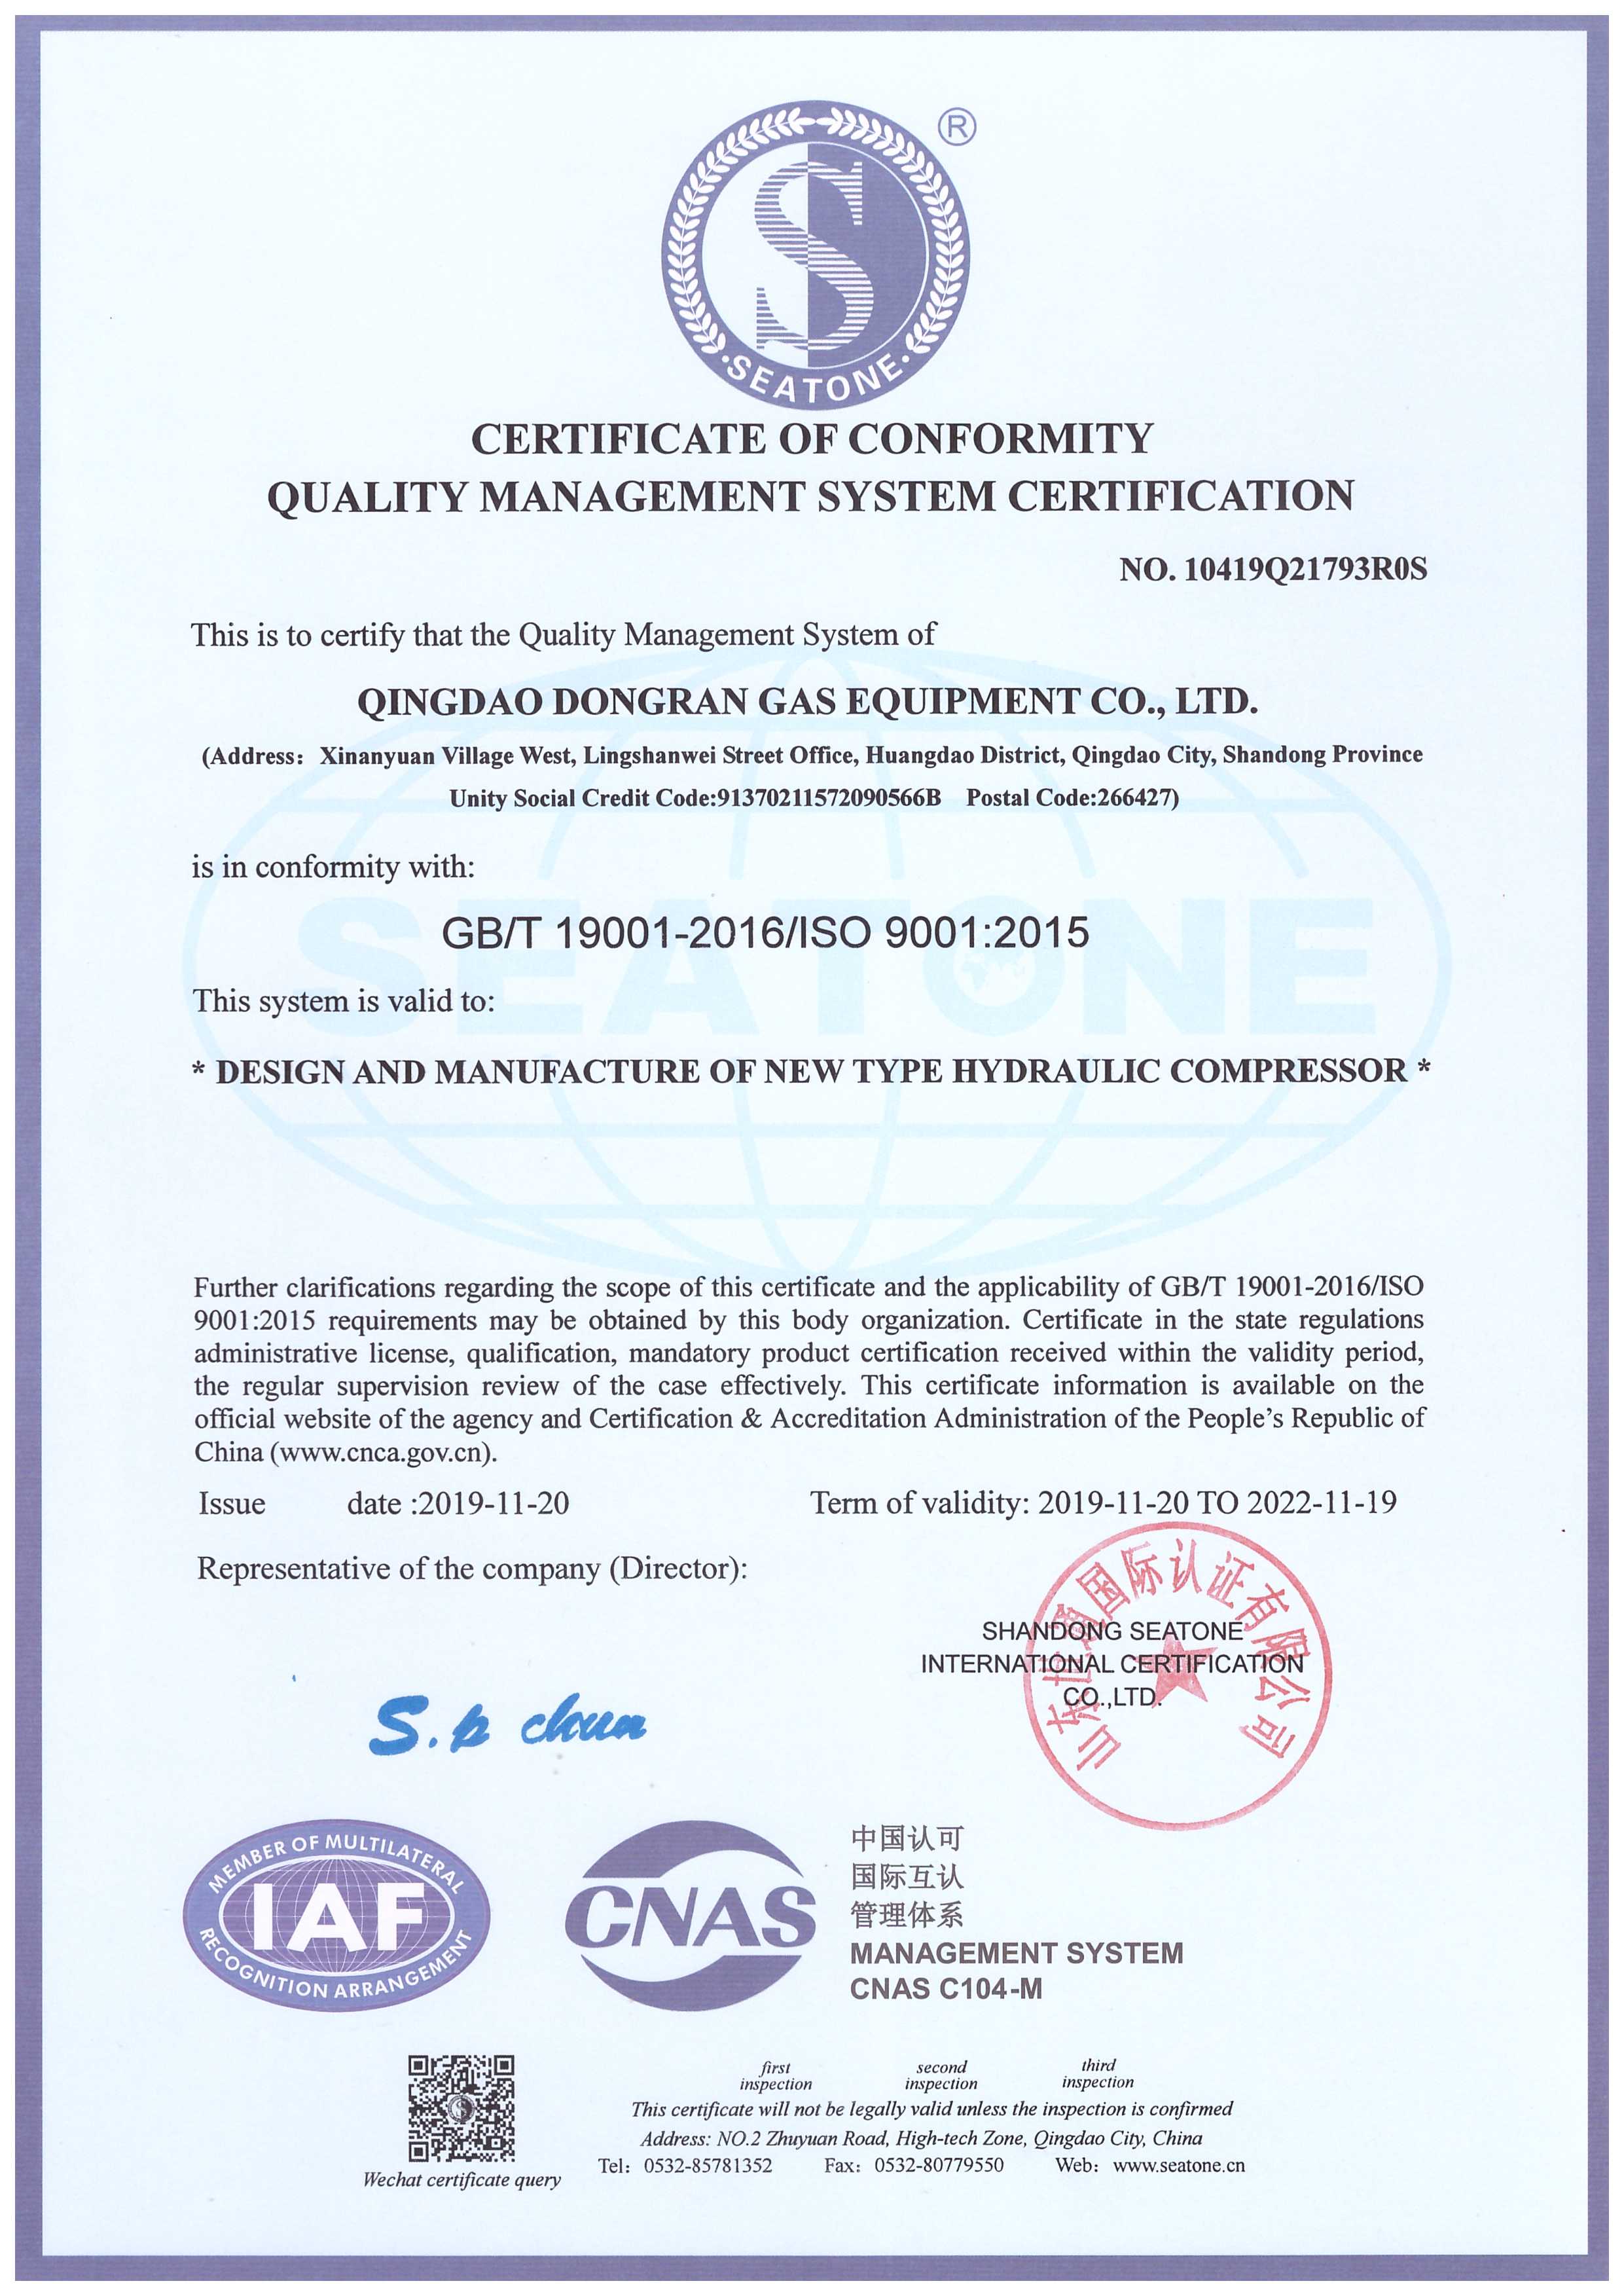 9.1质量管理体系认证证书9000 (1)